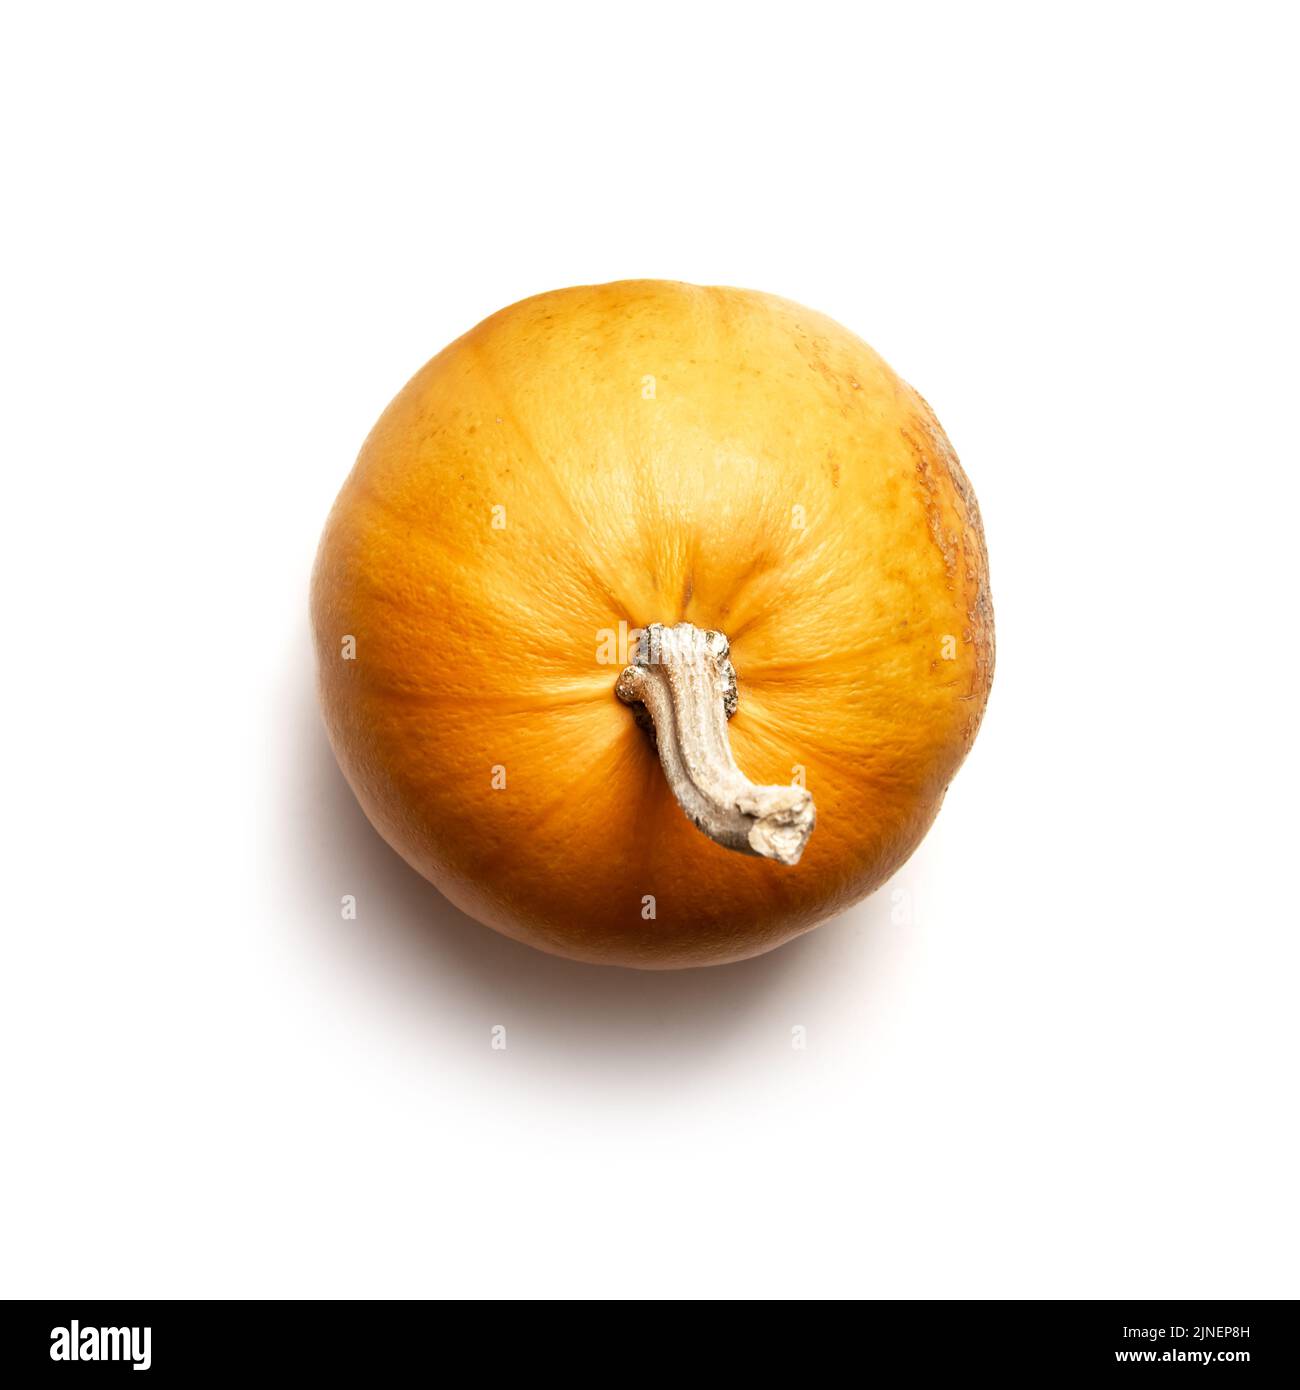 Zucca arancione isolata su sfondo bianco. Fotografia di cibo. Concetto di Halloween. Vista dall'alto. Parte di set diversi tipi di zucche. Foto Stock